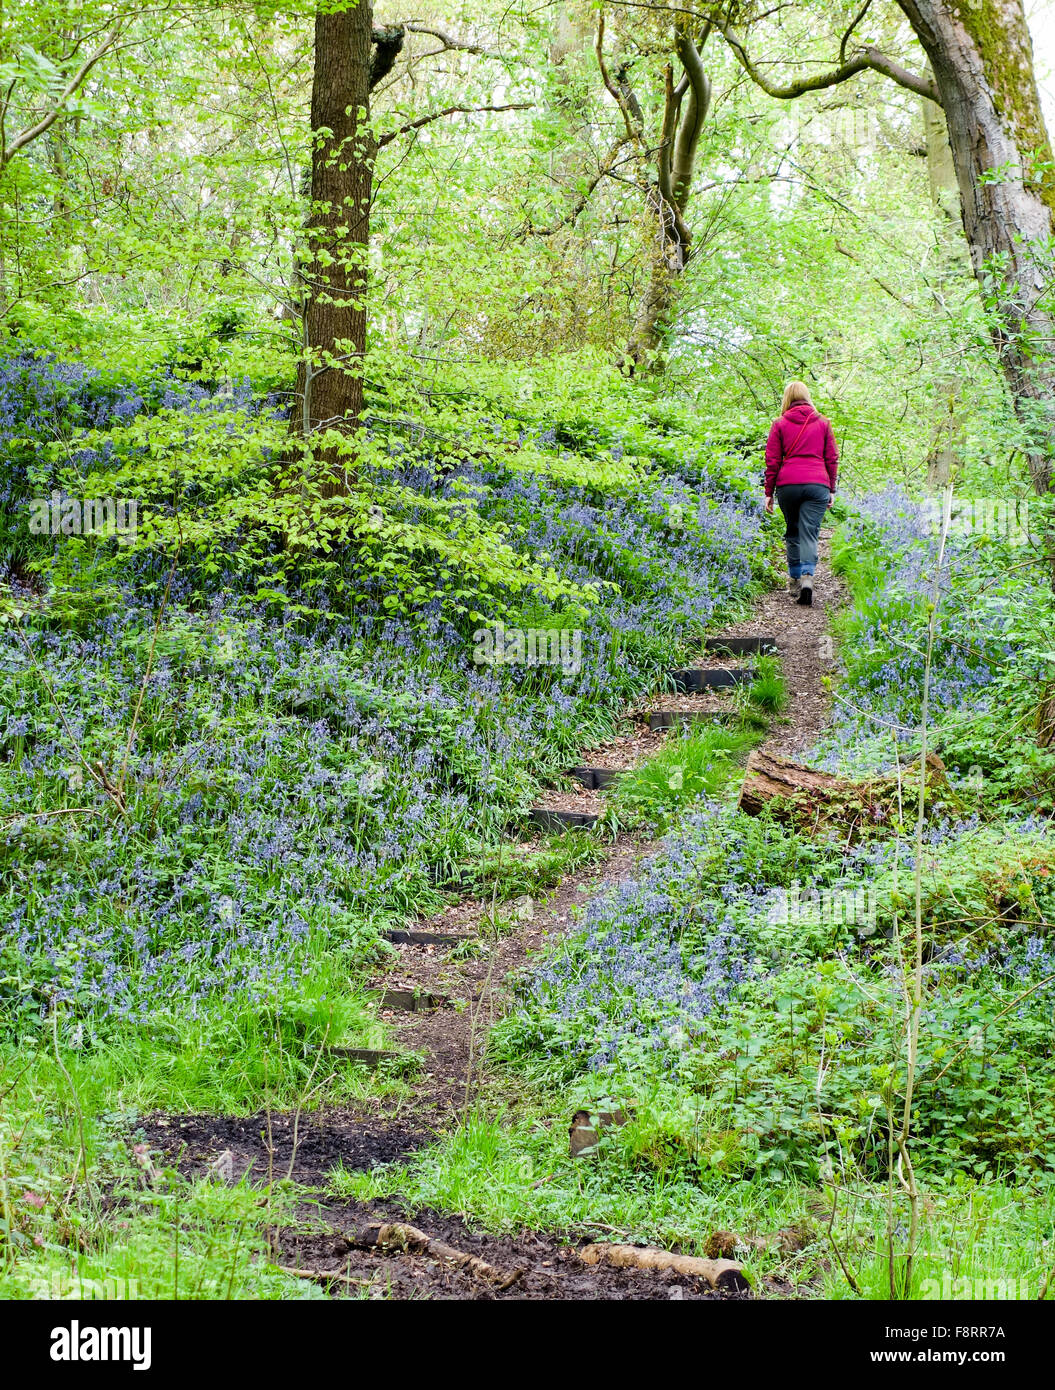 Une femme qui marche à travers le printemps Bluebells à Parrot's Drumble nature Reserve, Talke Pits, Stoke on Trent, Staffordshire, Angleterre, Royaume-Uni Banque D'Images